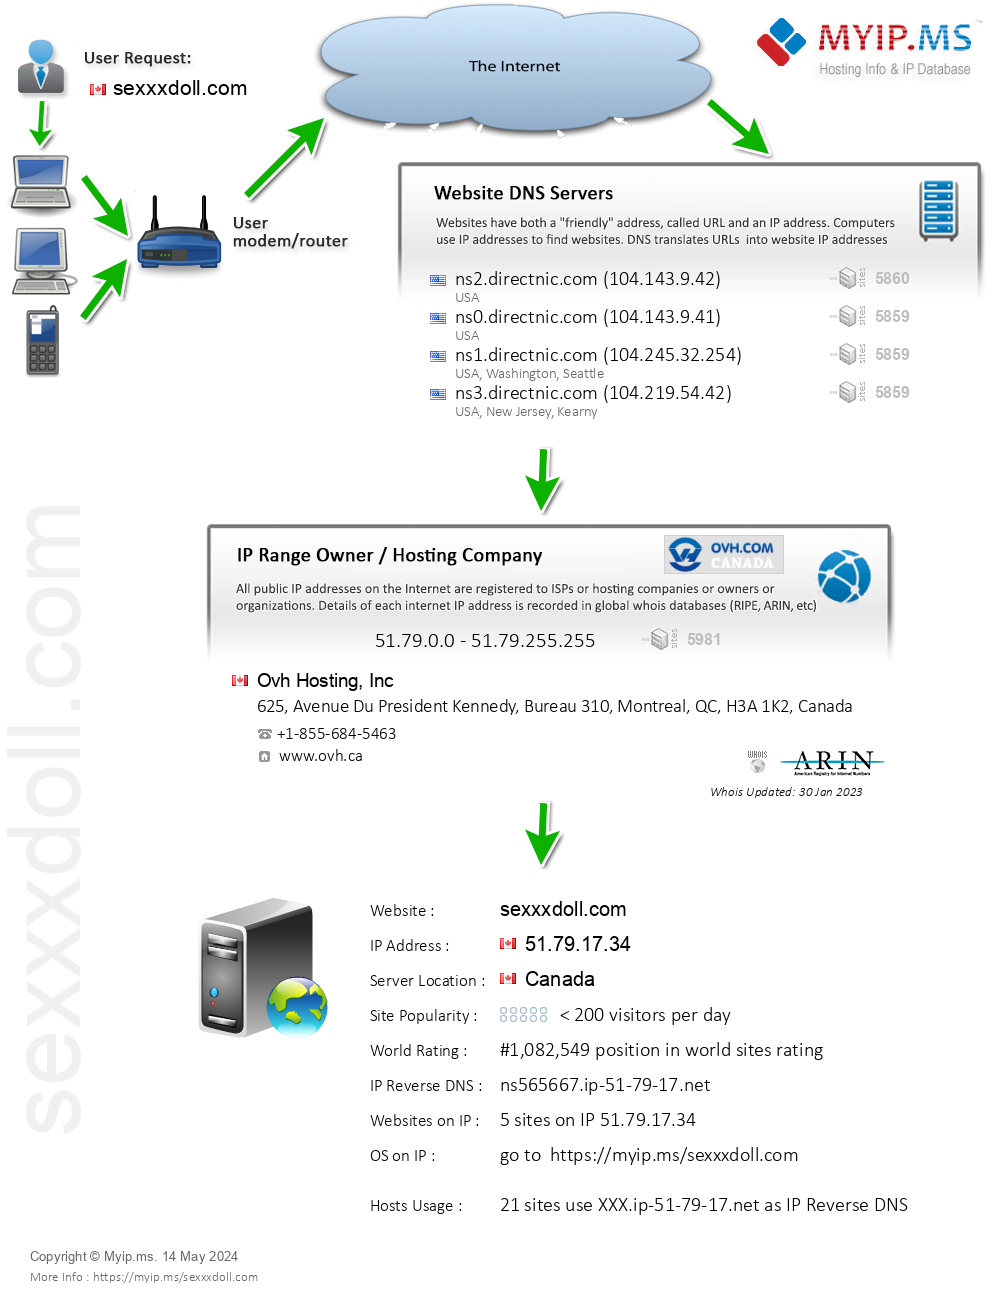 Sexxxdoll.com - Website Hosting Visual IP Diagram